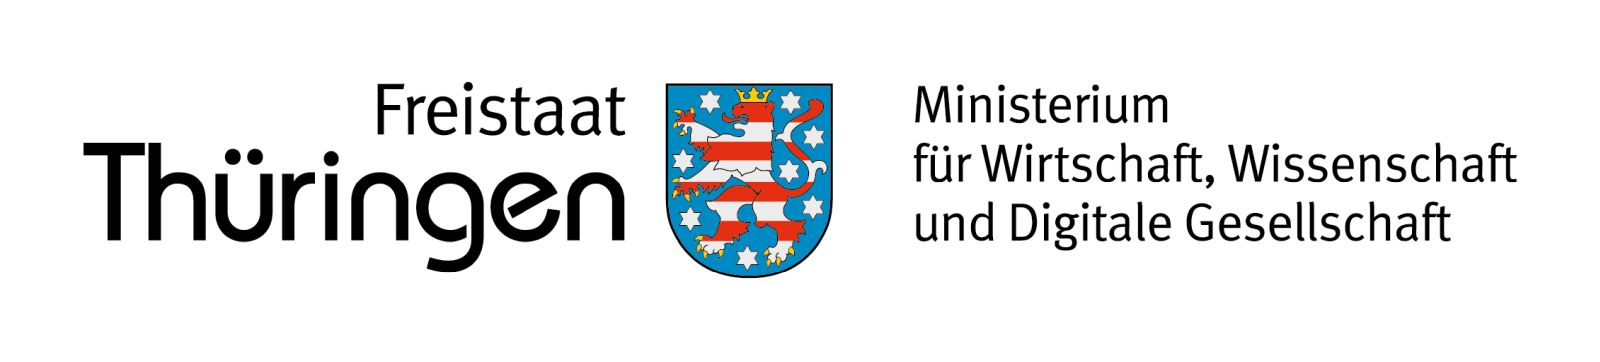 Freistaat Thüringen - Ministerium für Wirtschaft, Wissenschaft und Digitale Gesellschaft